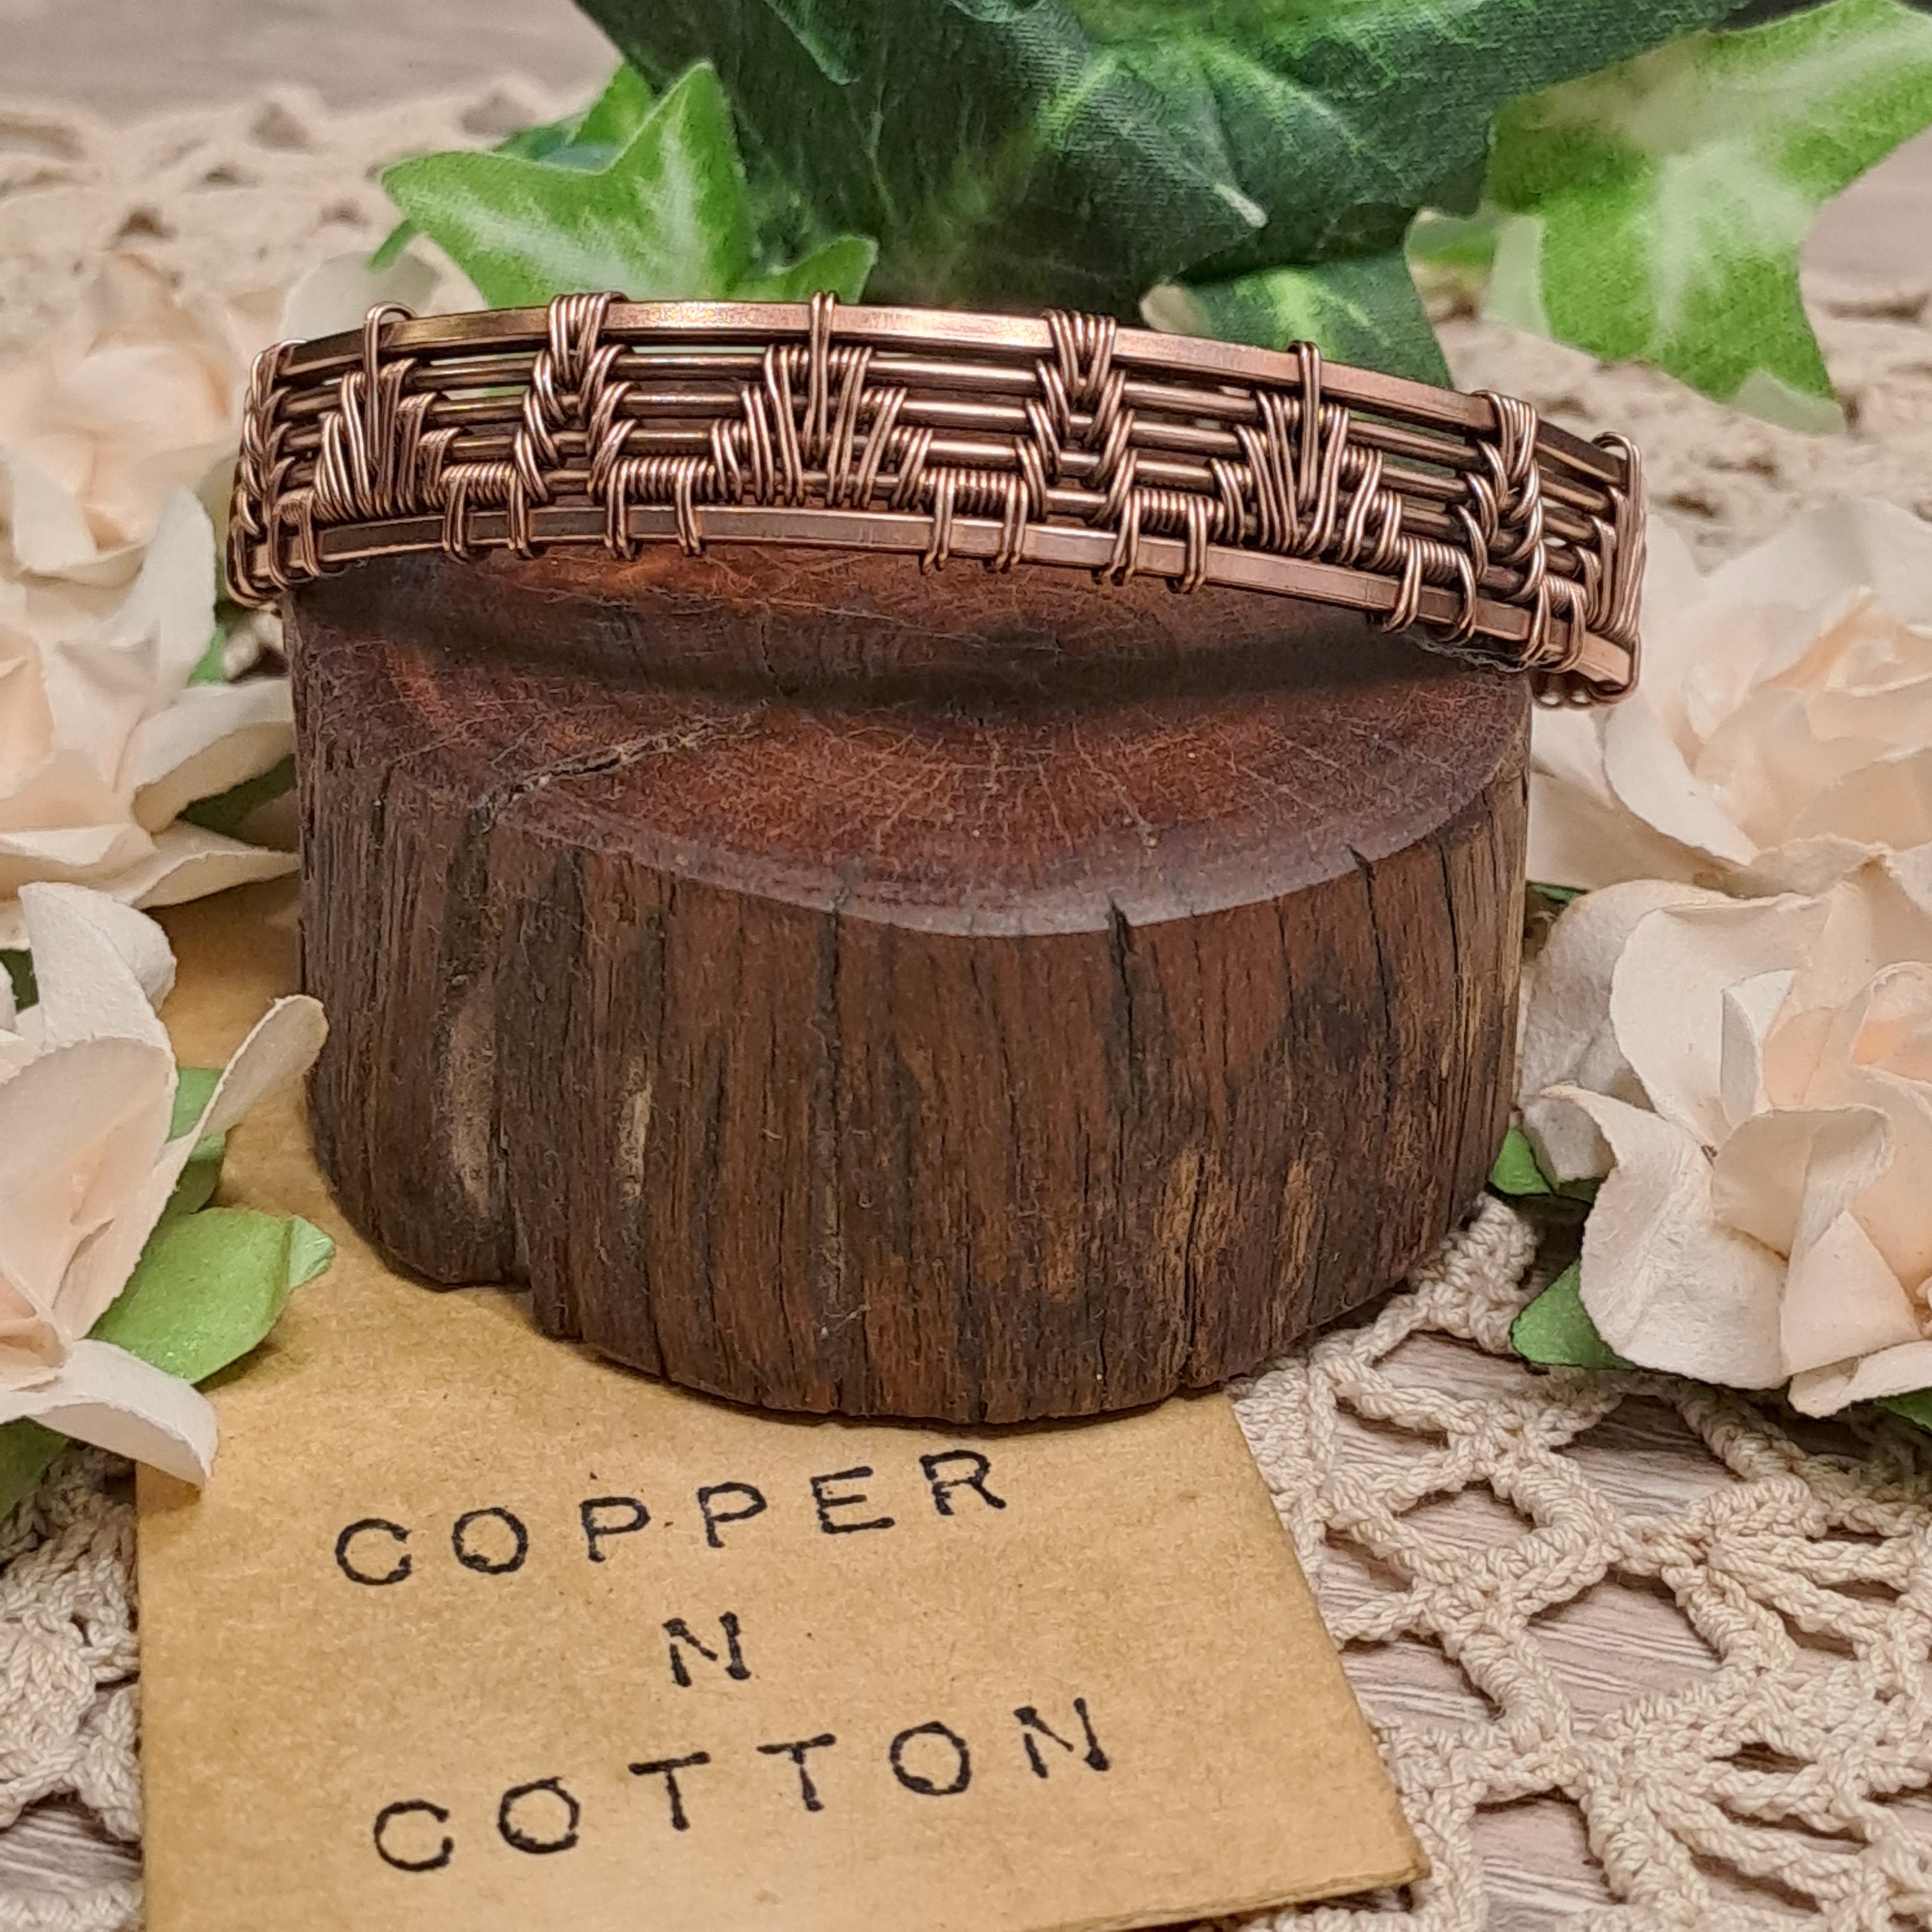 Men Copper bracelet Copper men bangle Unisex woven Wire Wrapped jewelry bracelet  Wire Braided bracelet Copper jewelry